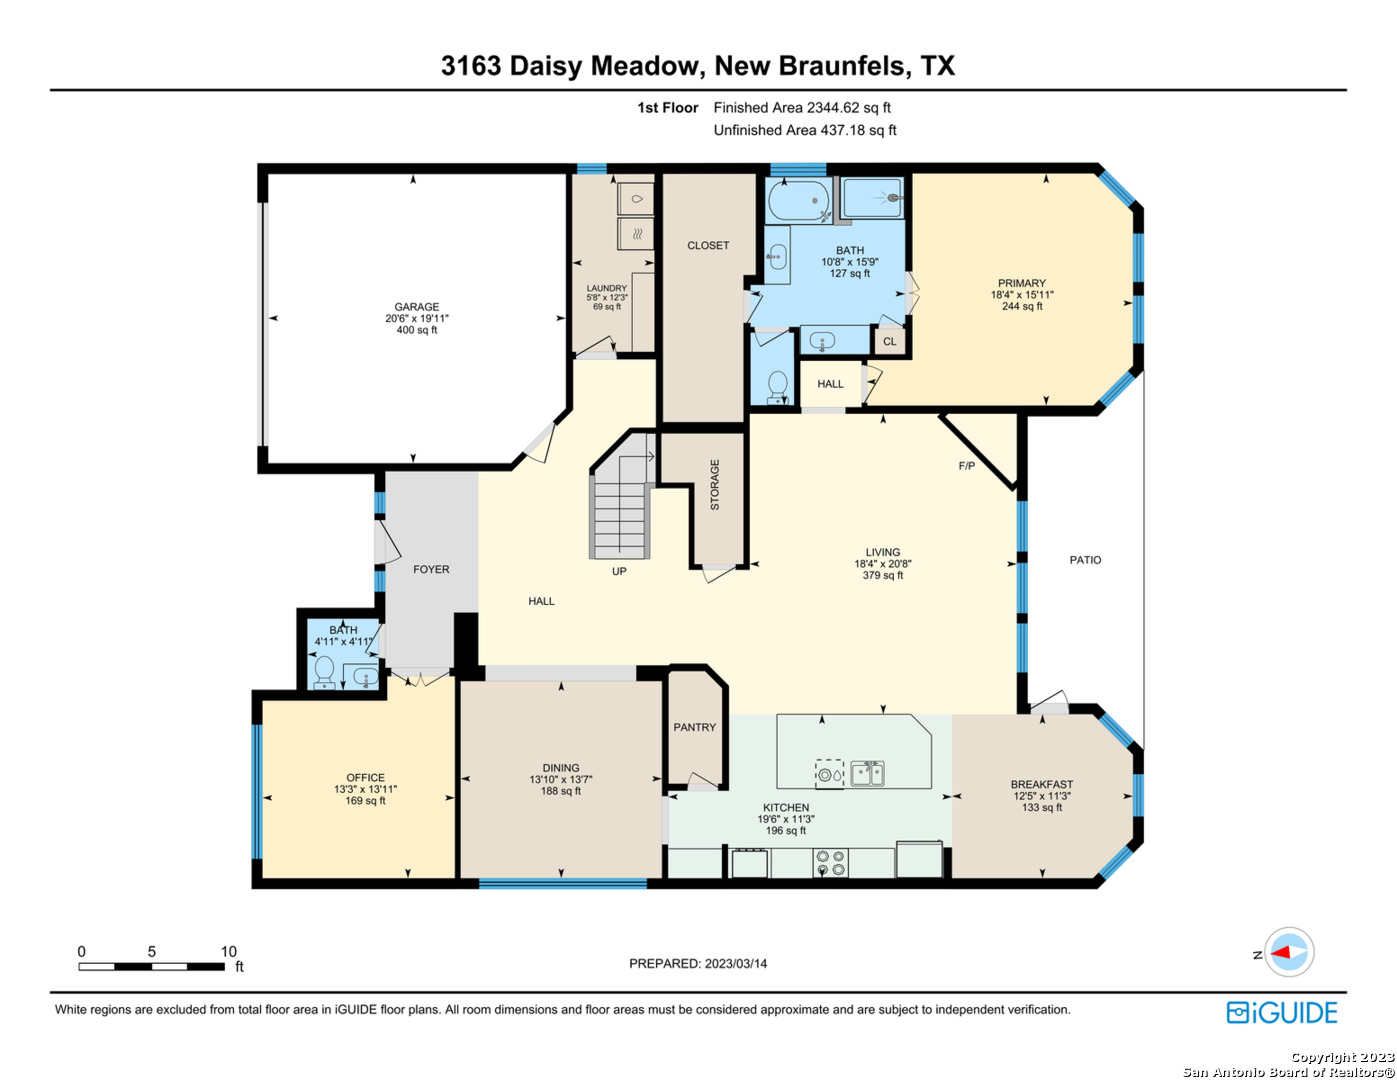 3163 Daisy Meadow   New Braunfels TX 78130